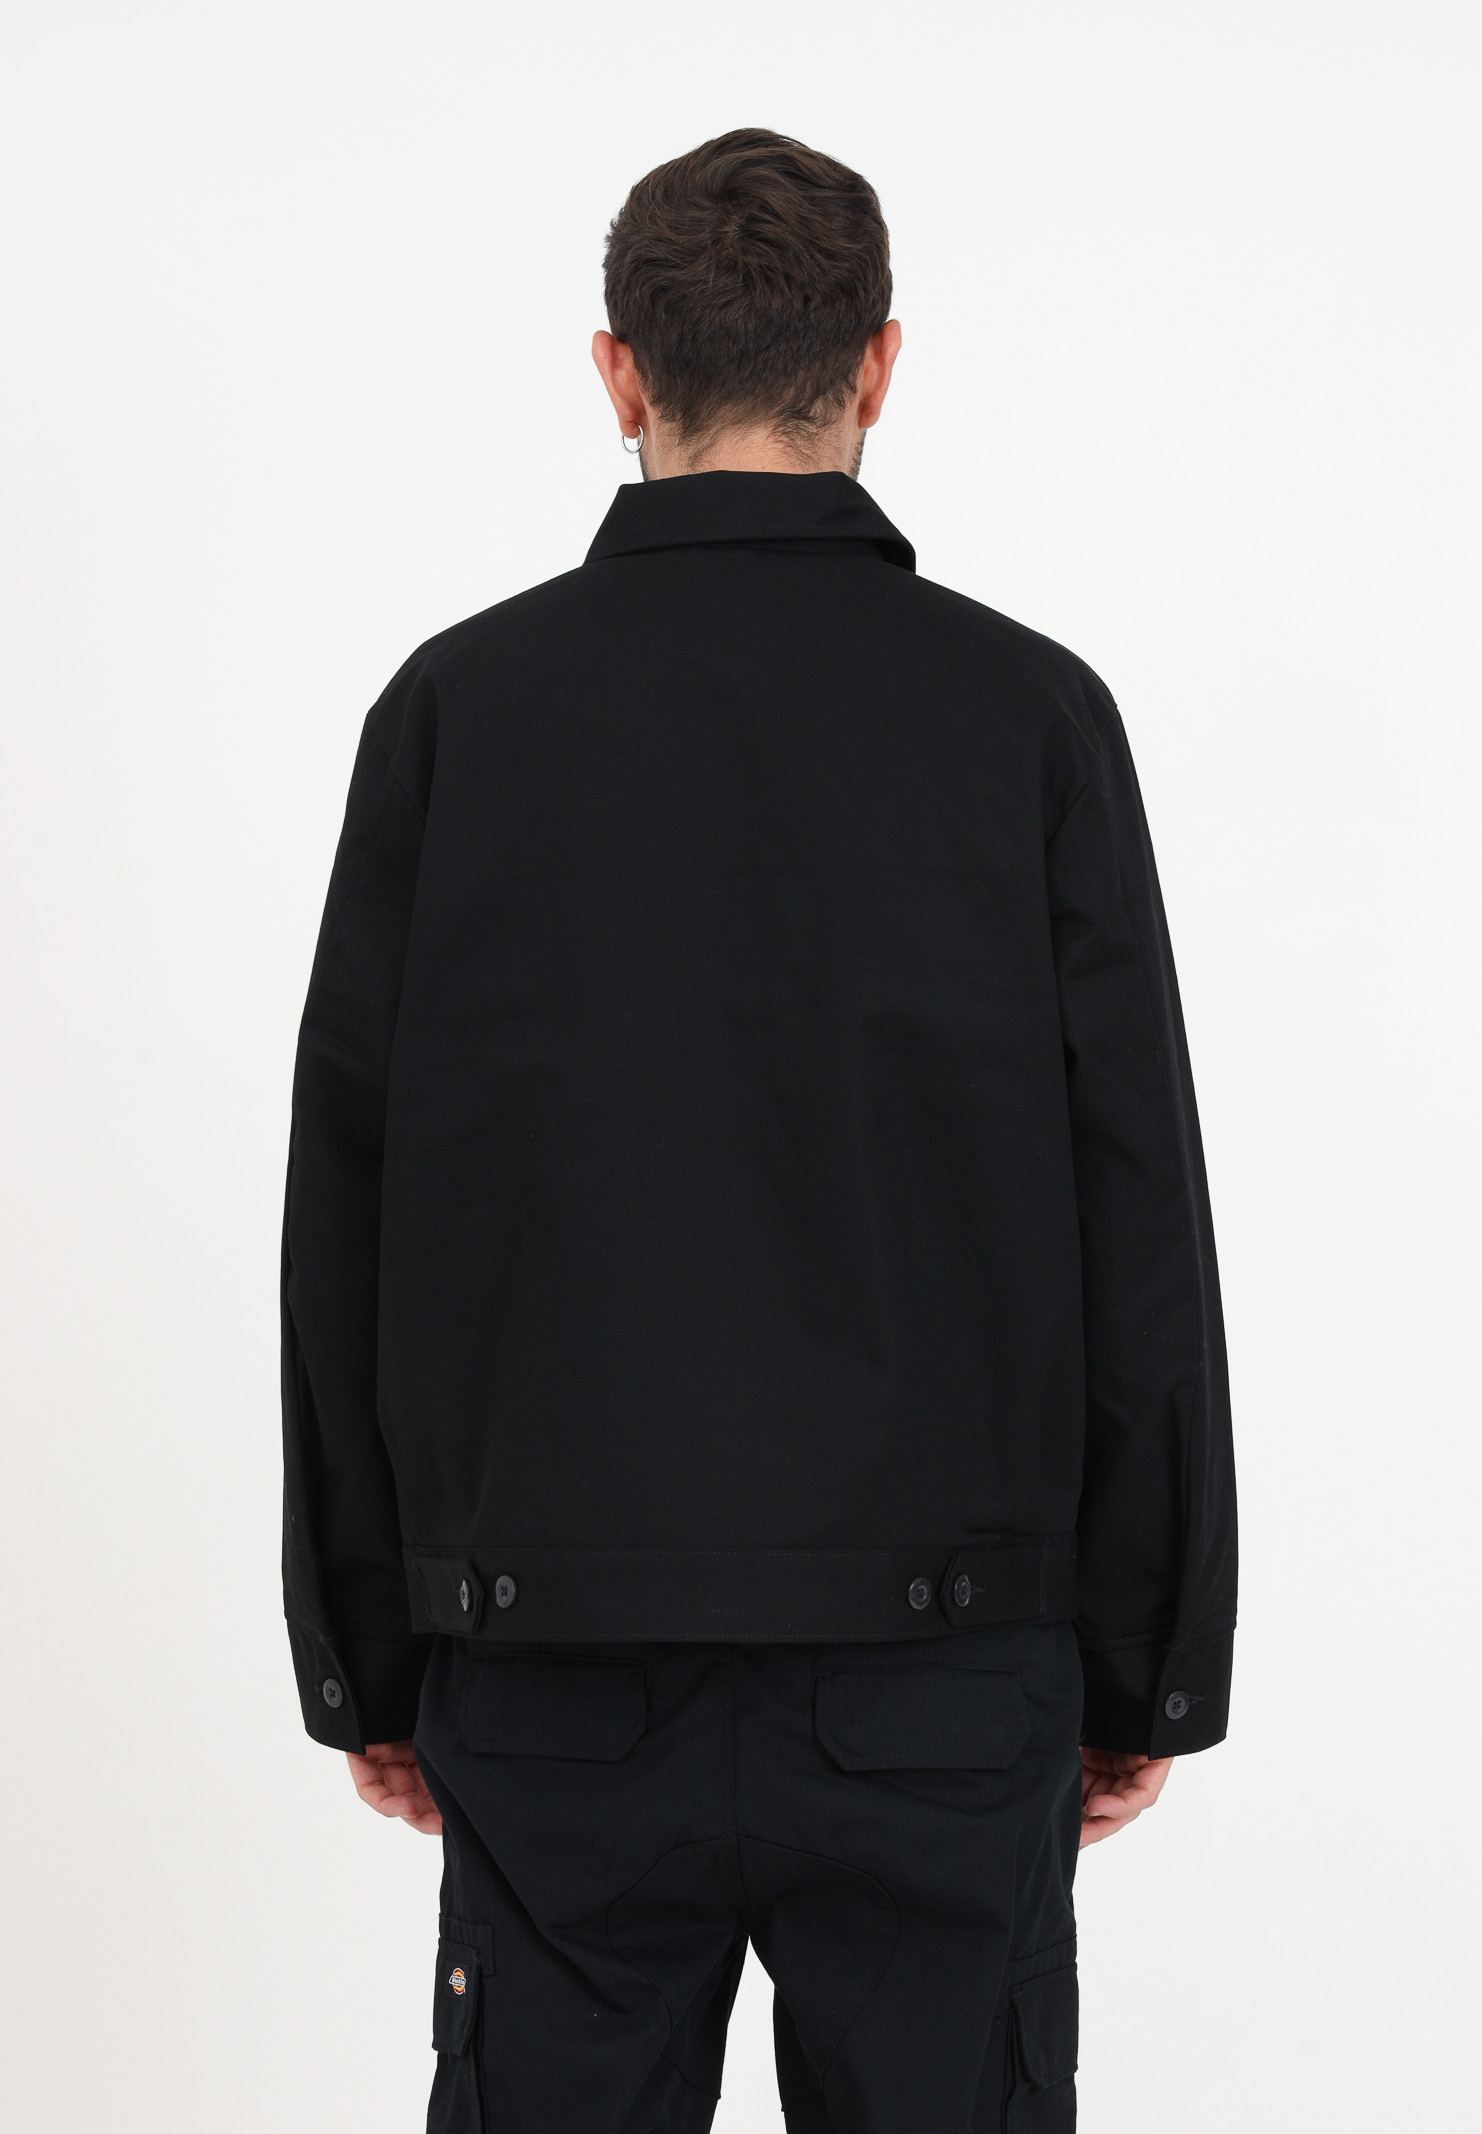 giacca da uomo colore nero caratterizzata da materiale impermiabile DIckies | DK0A4XK4BLK1BLK1